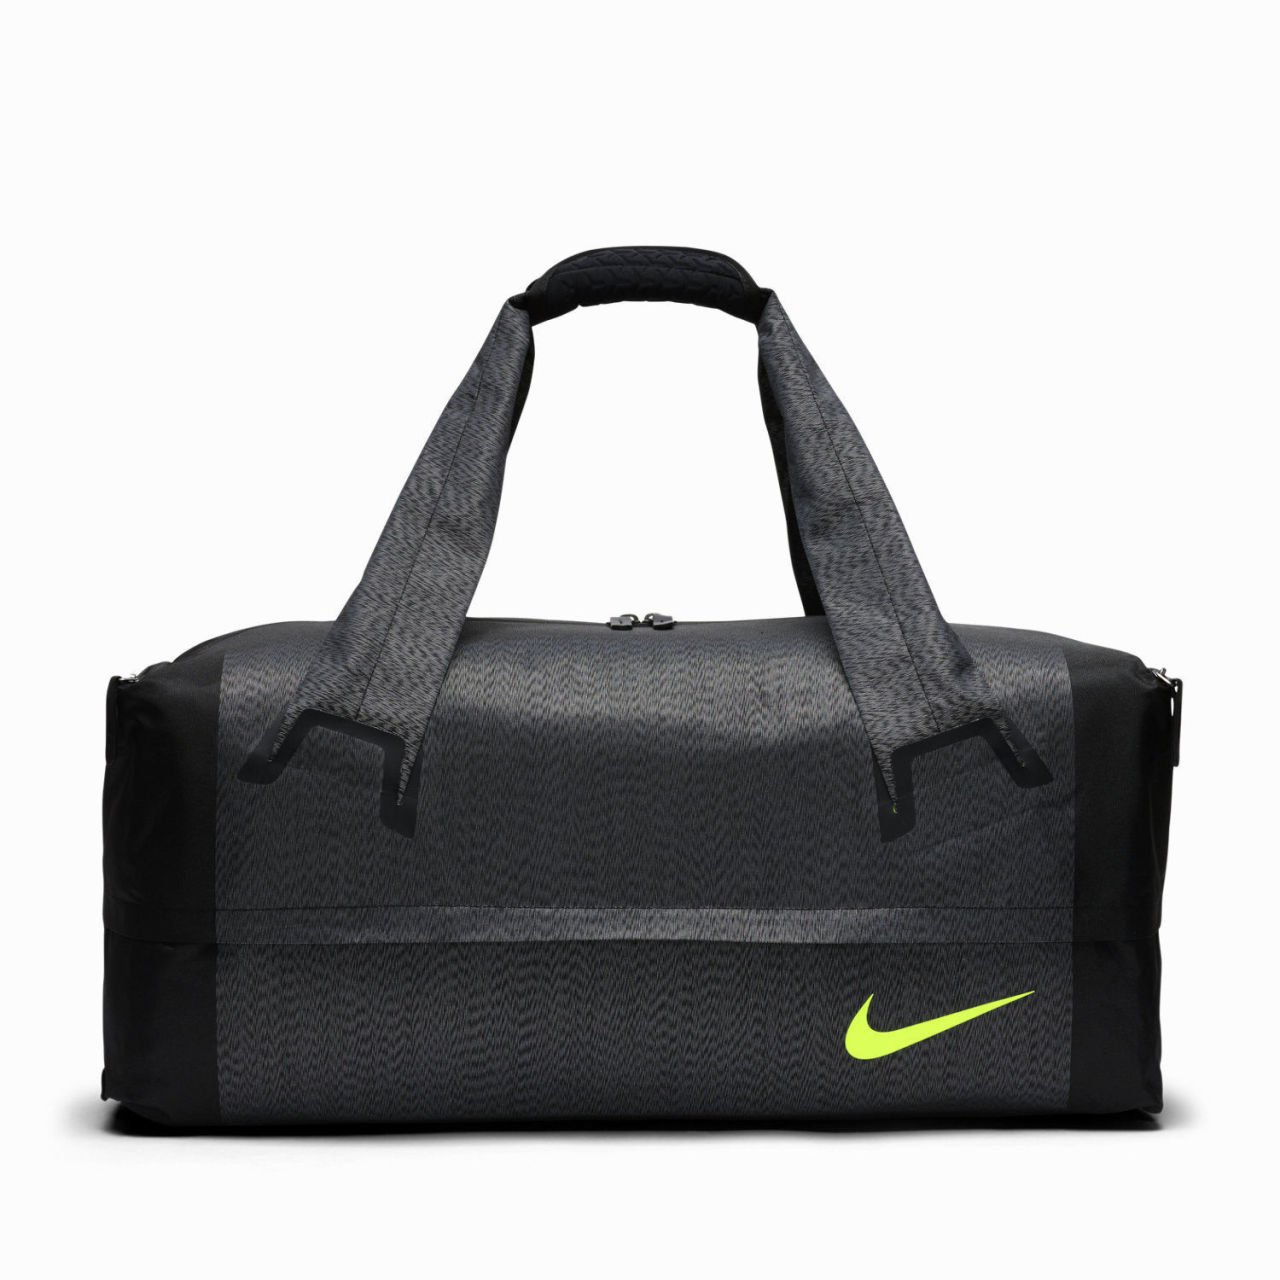 Nike Engineered Ultimatum Training Duffel Bag